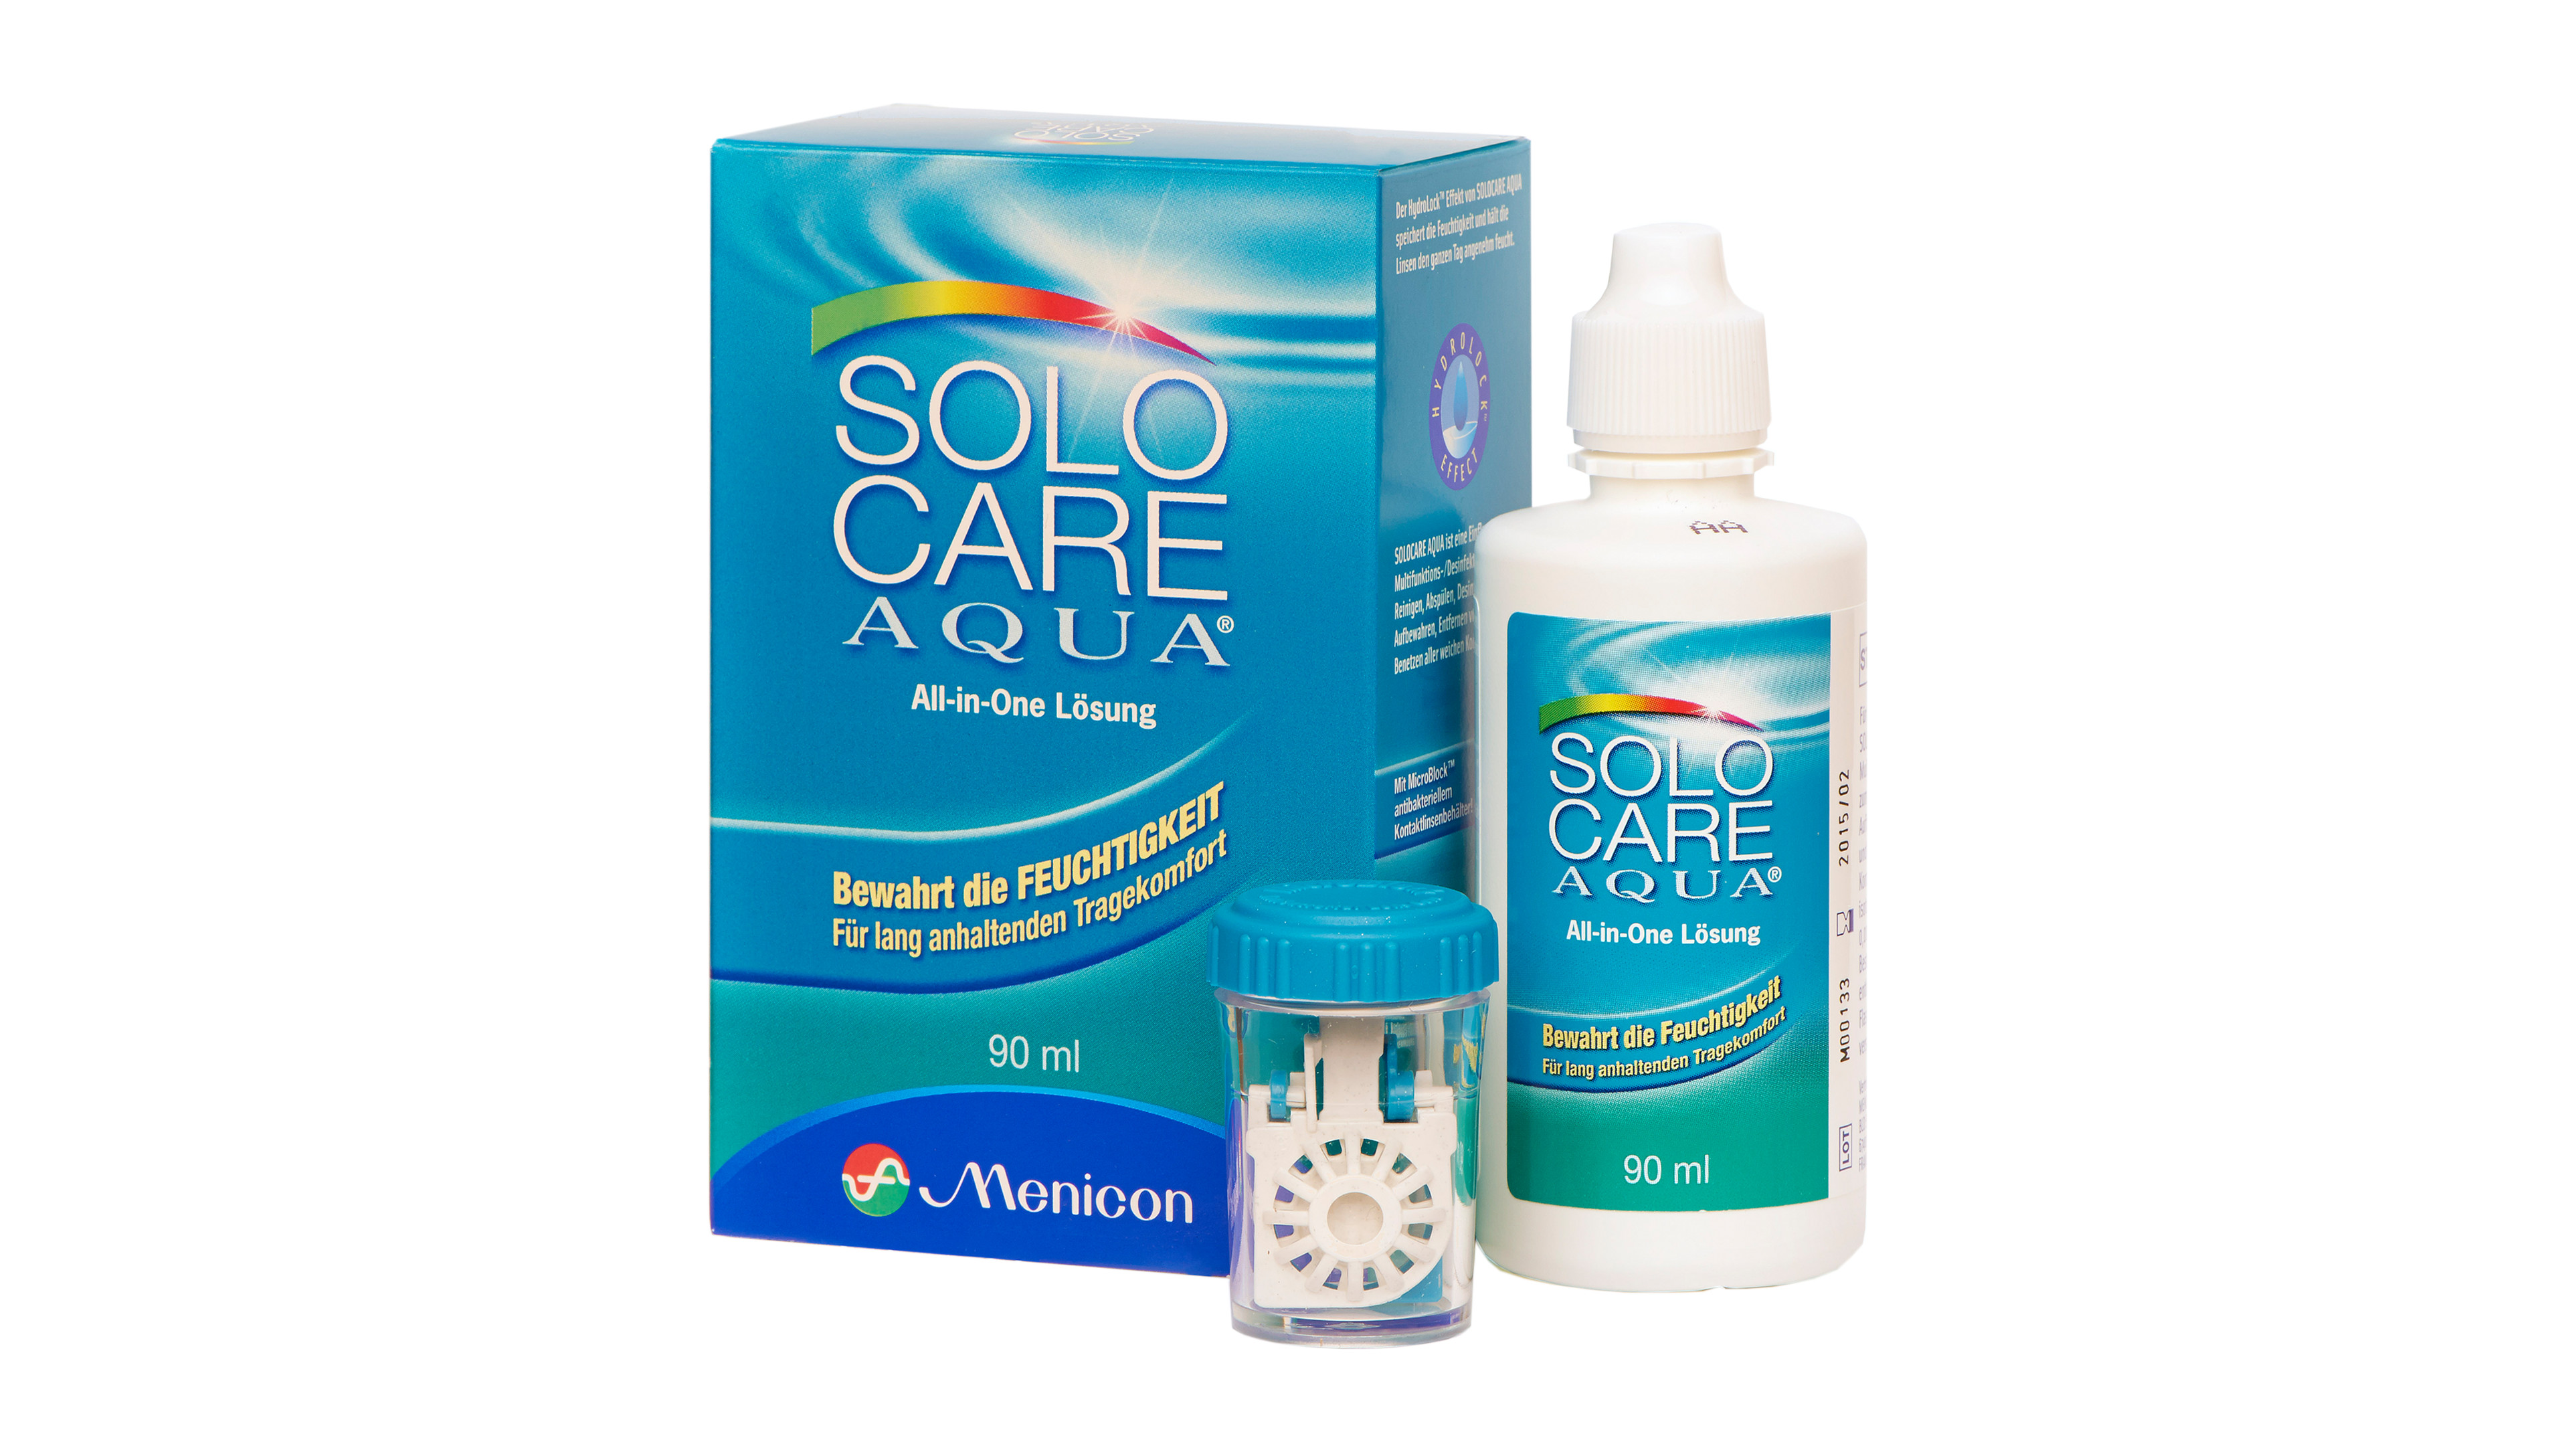 Front Solocare Aqua® Solocare Aqua® All-in-One Pflege All-in-One Pflege Reisepack 90ml